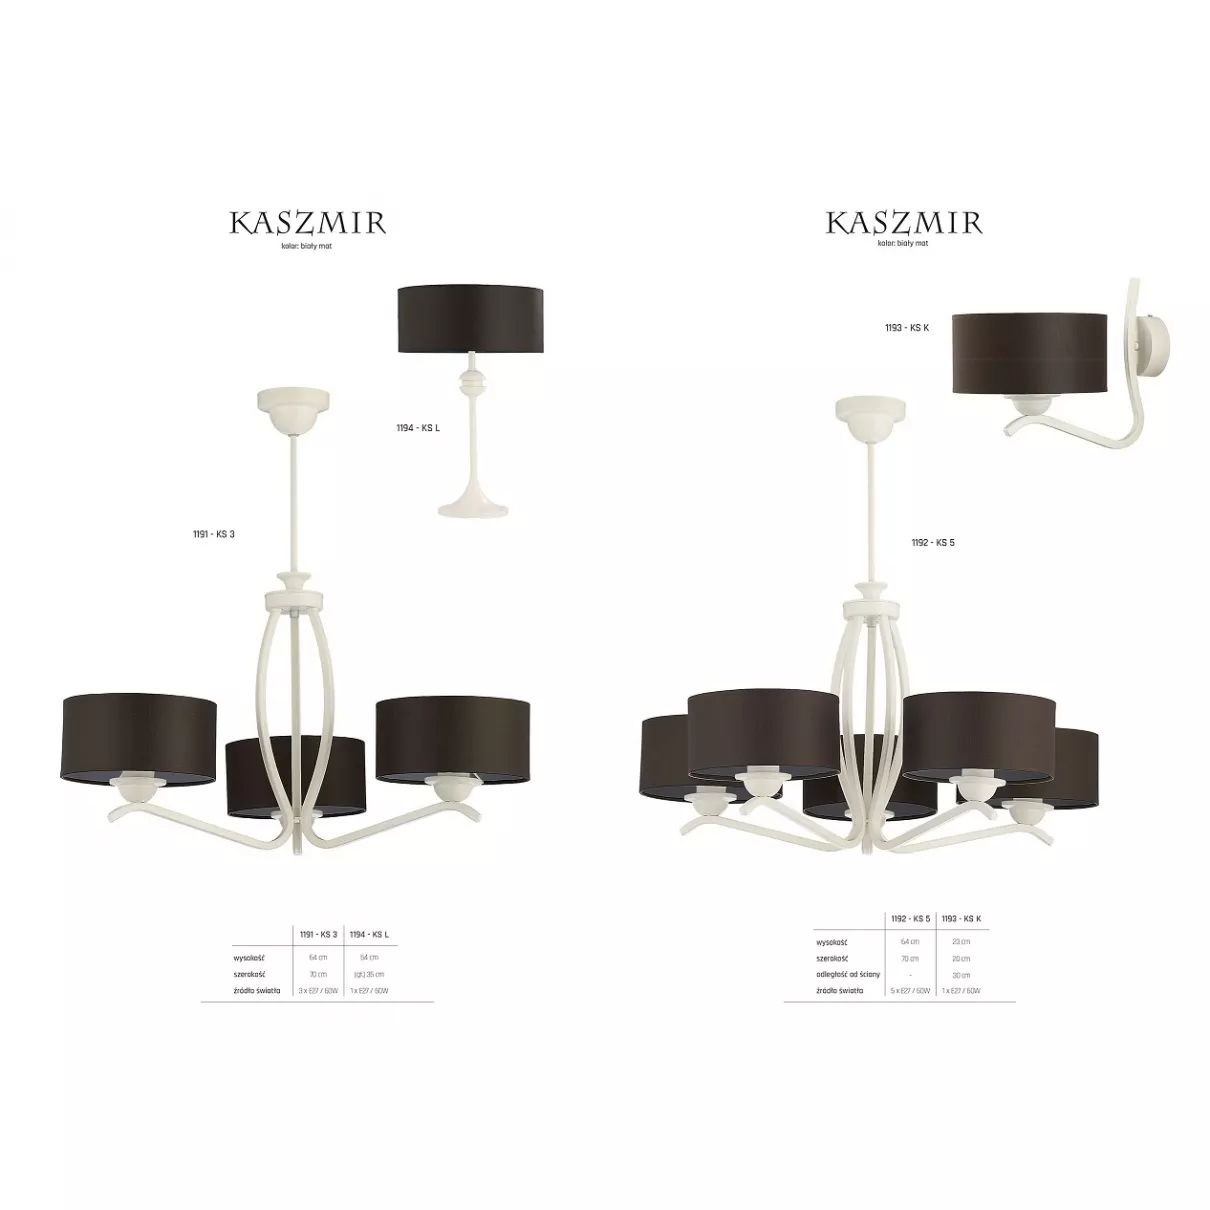 Kaszmir - Asztali lámpa - Jupiter-1194-KSL B